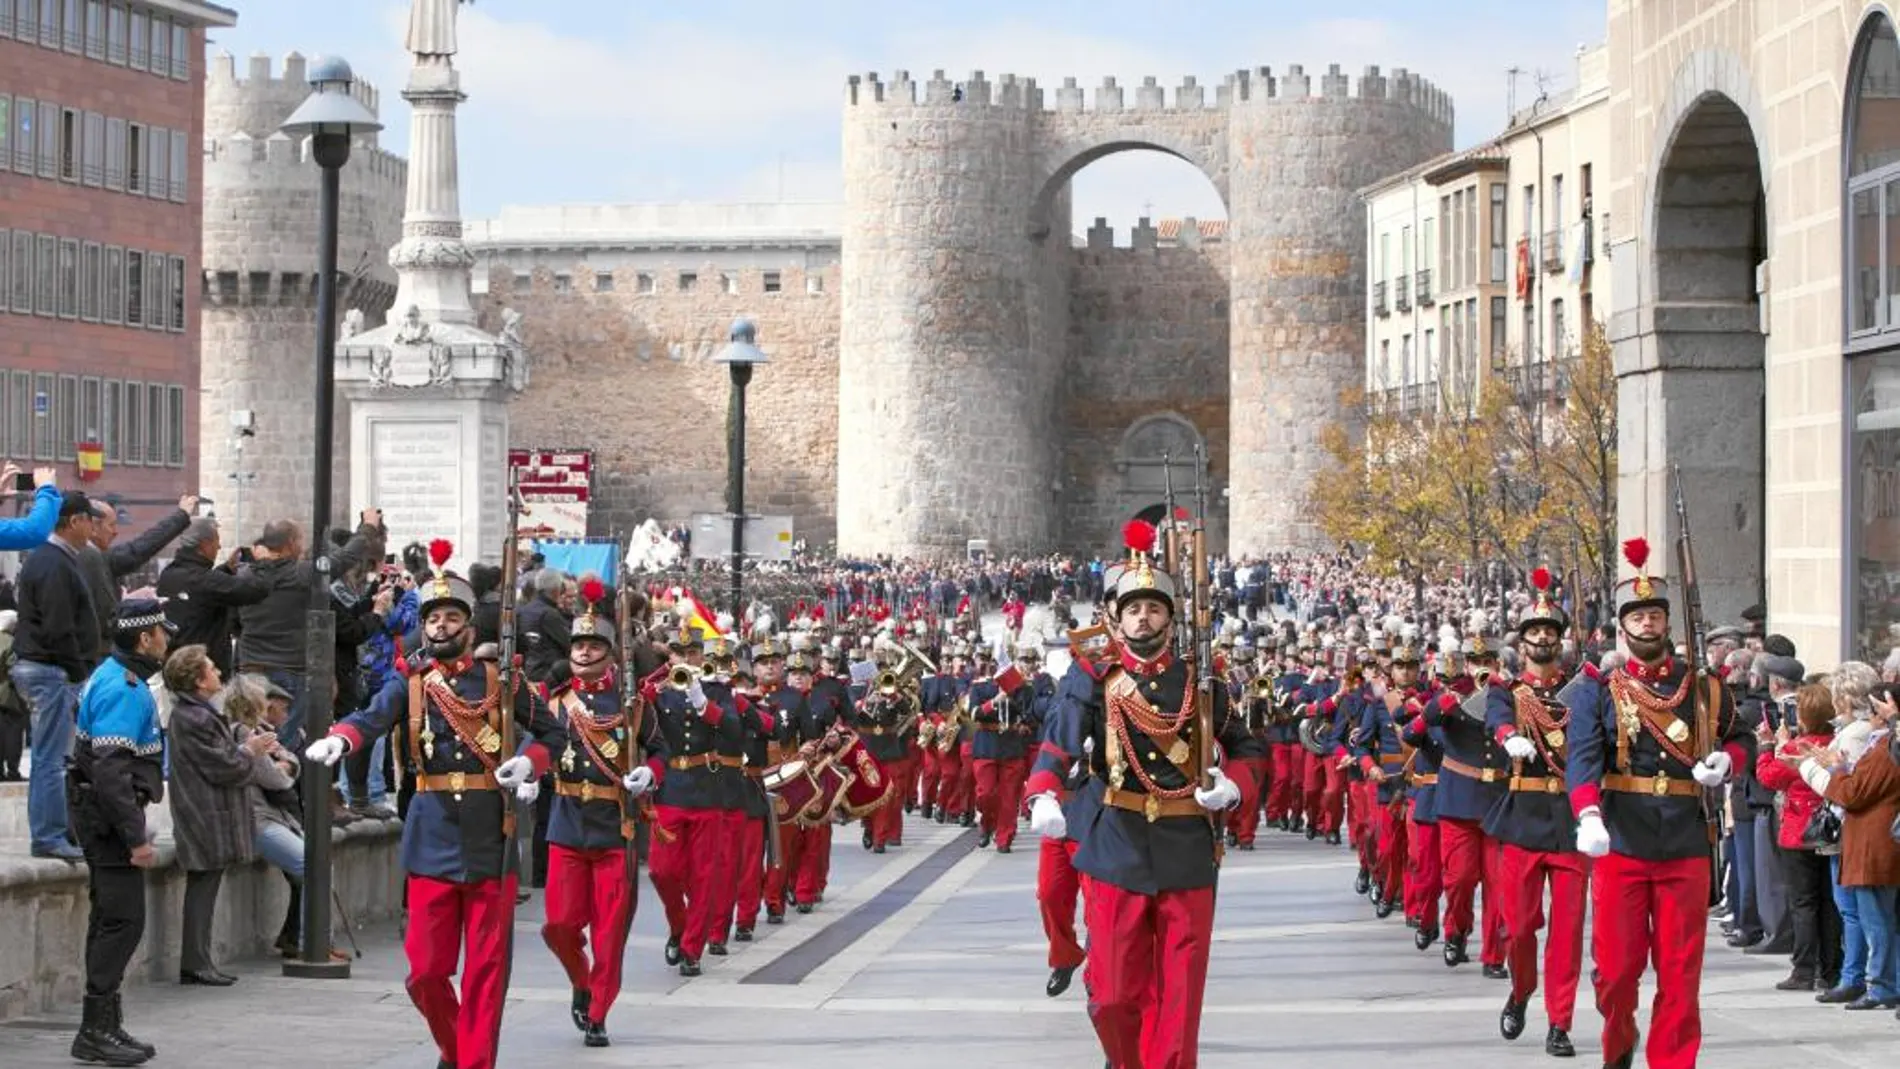 El Cuerpo de Intendencia homenajea a su patrona Santa Teresa con una parada militar en Ávila